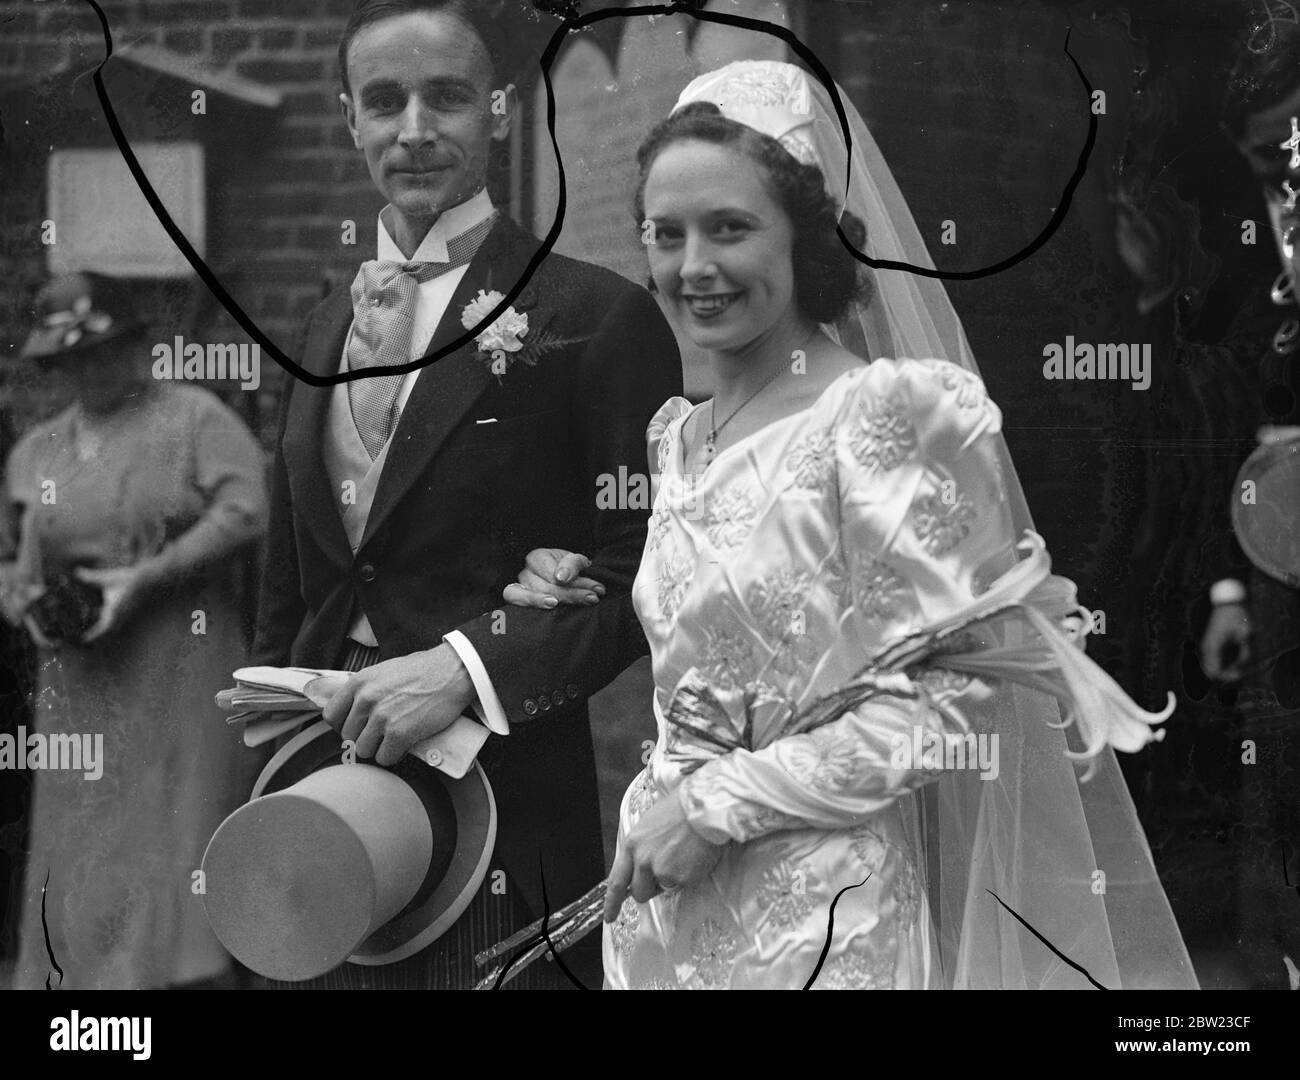 Mlle Billie Despard , 26 ans, mannequin et nièce d'artistes de Chelsea de Mme Despard , célèbre suffragette , a été mariée à la vieille église de Chelsea , Londres , à M. Hillary Stratton , sculpteur pour lequel elle a posé. 7 juillet 1937. Banque D'Images